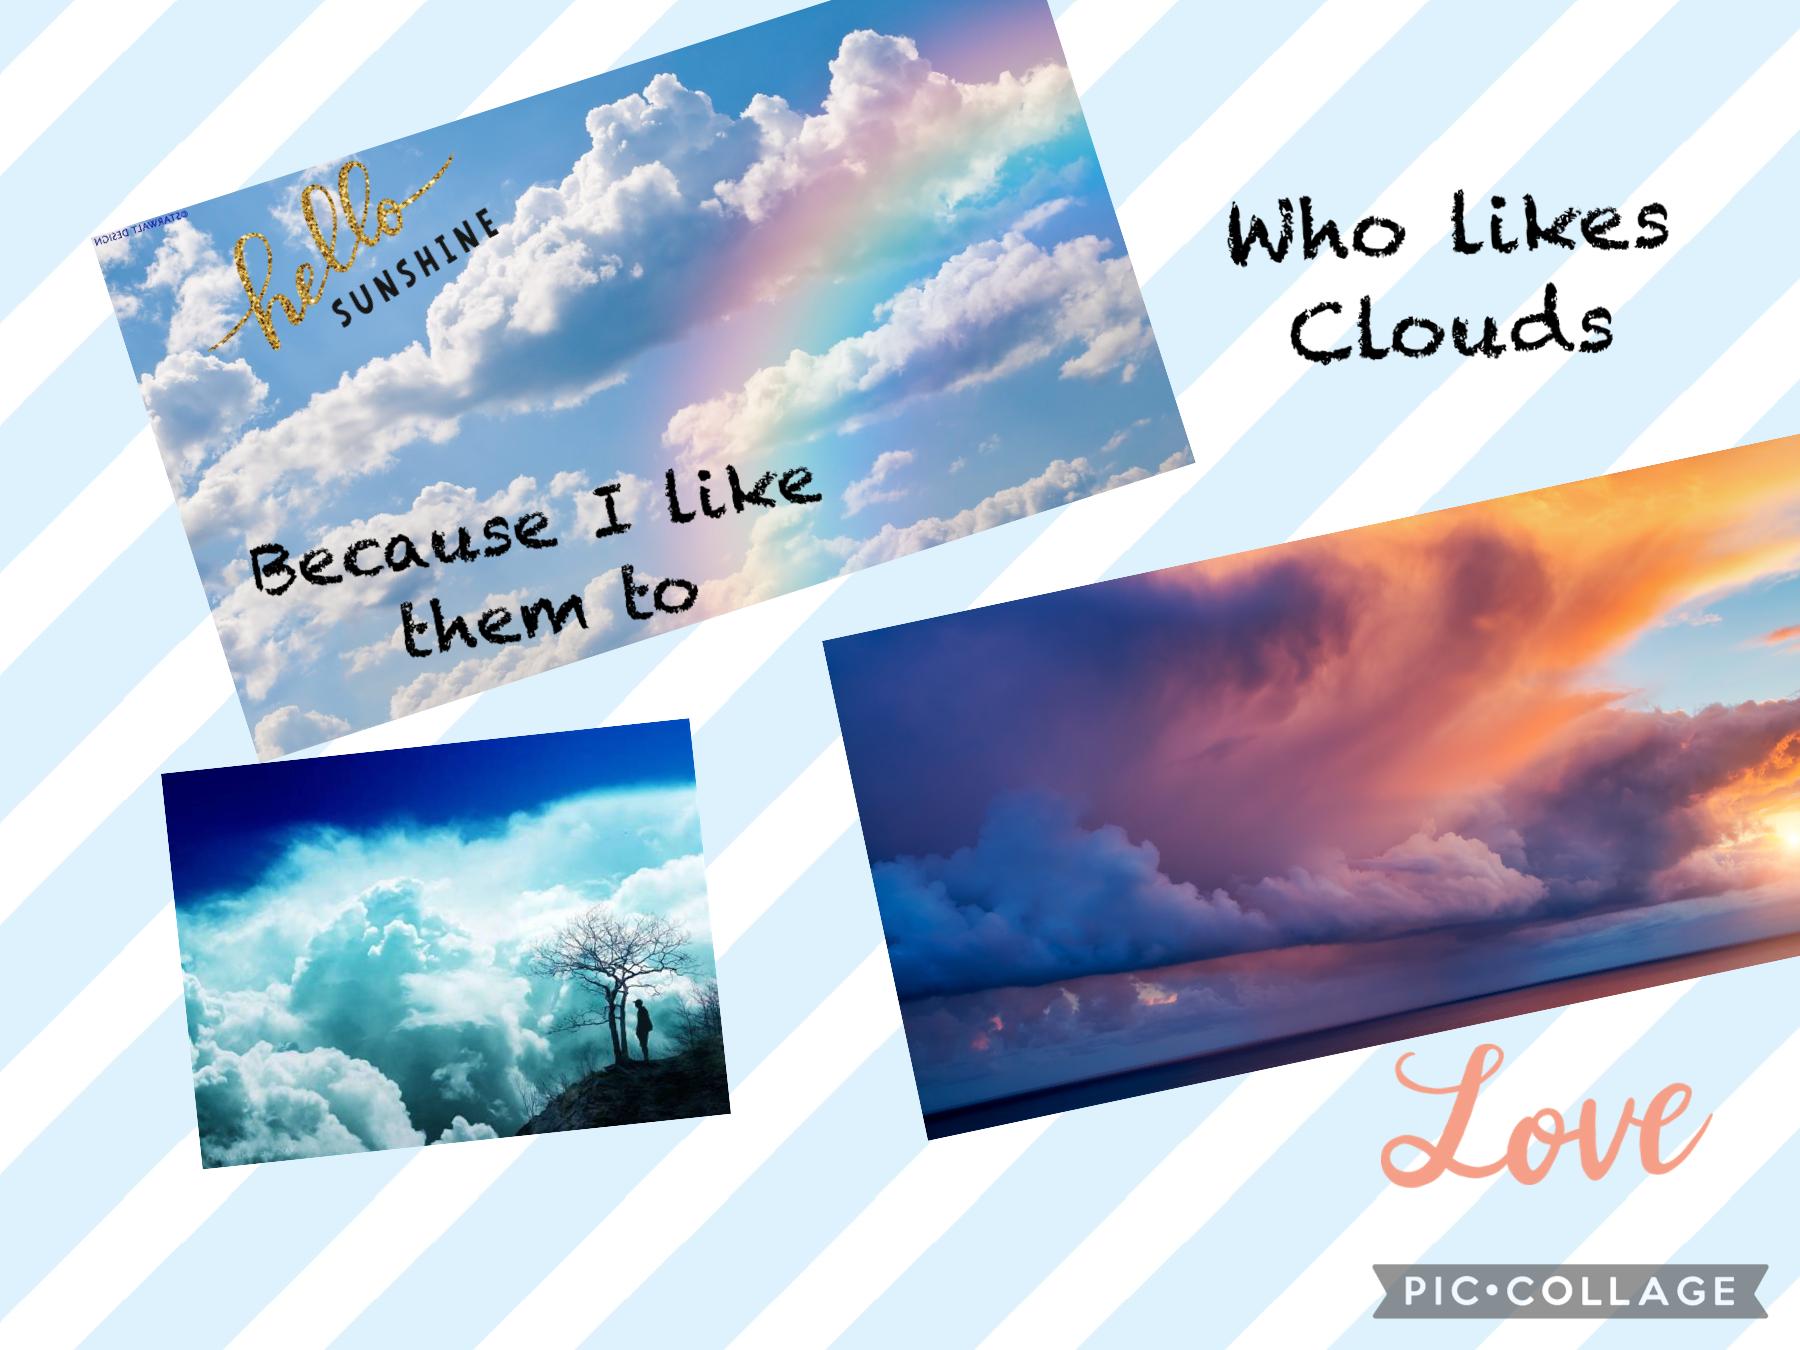 Do you like clouds